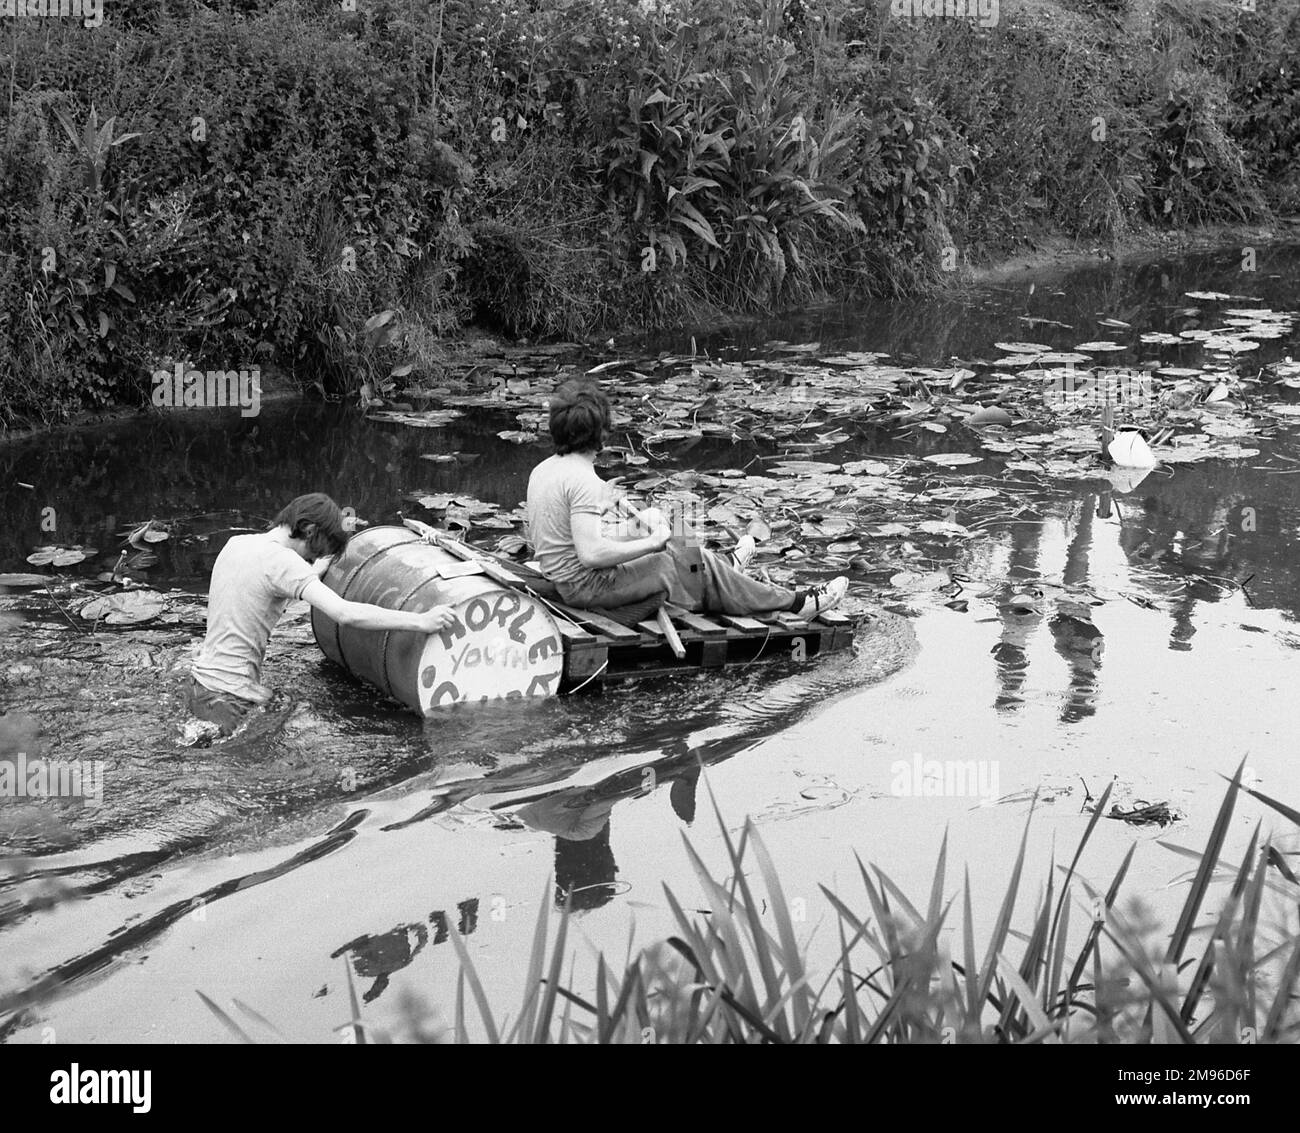 Due ragazzi con una zattera fatta di doghe di legno e un tamburo d'olio fanno la loro strada lungo un fiume. Sul tamburo sono dipinte le parole: Horley Youth Club. Foto Stock